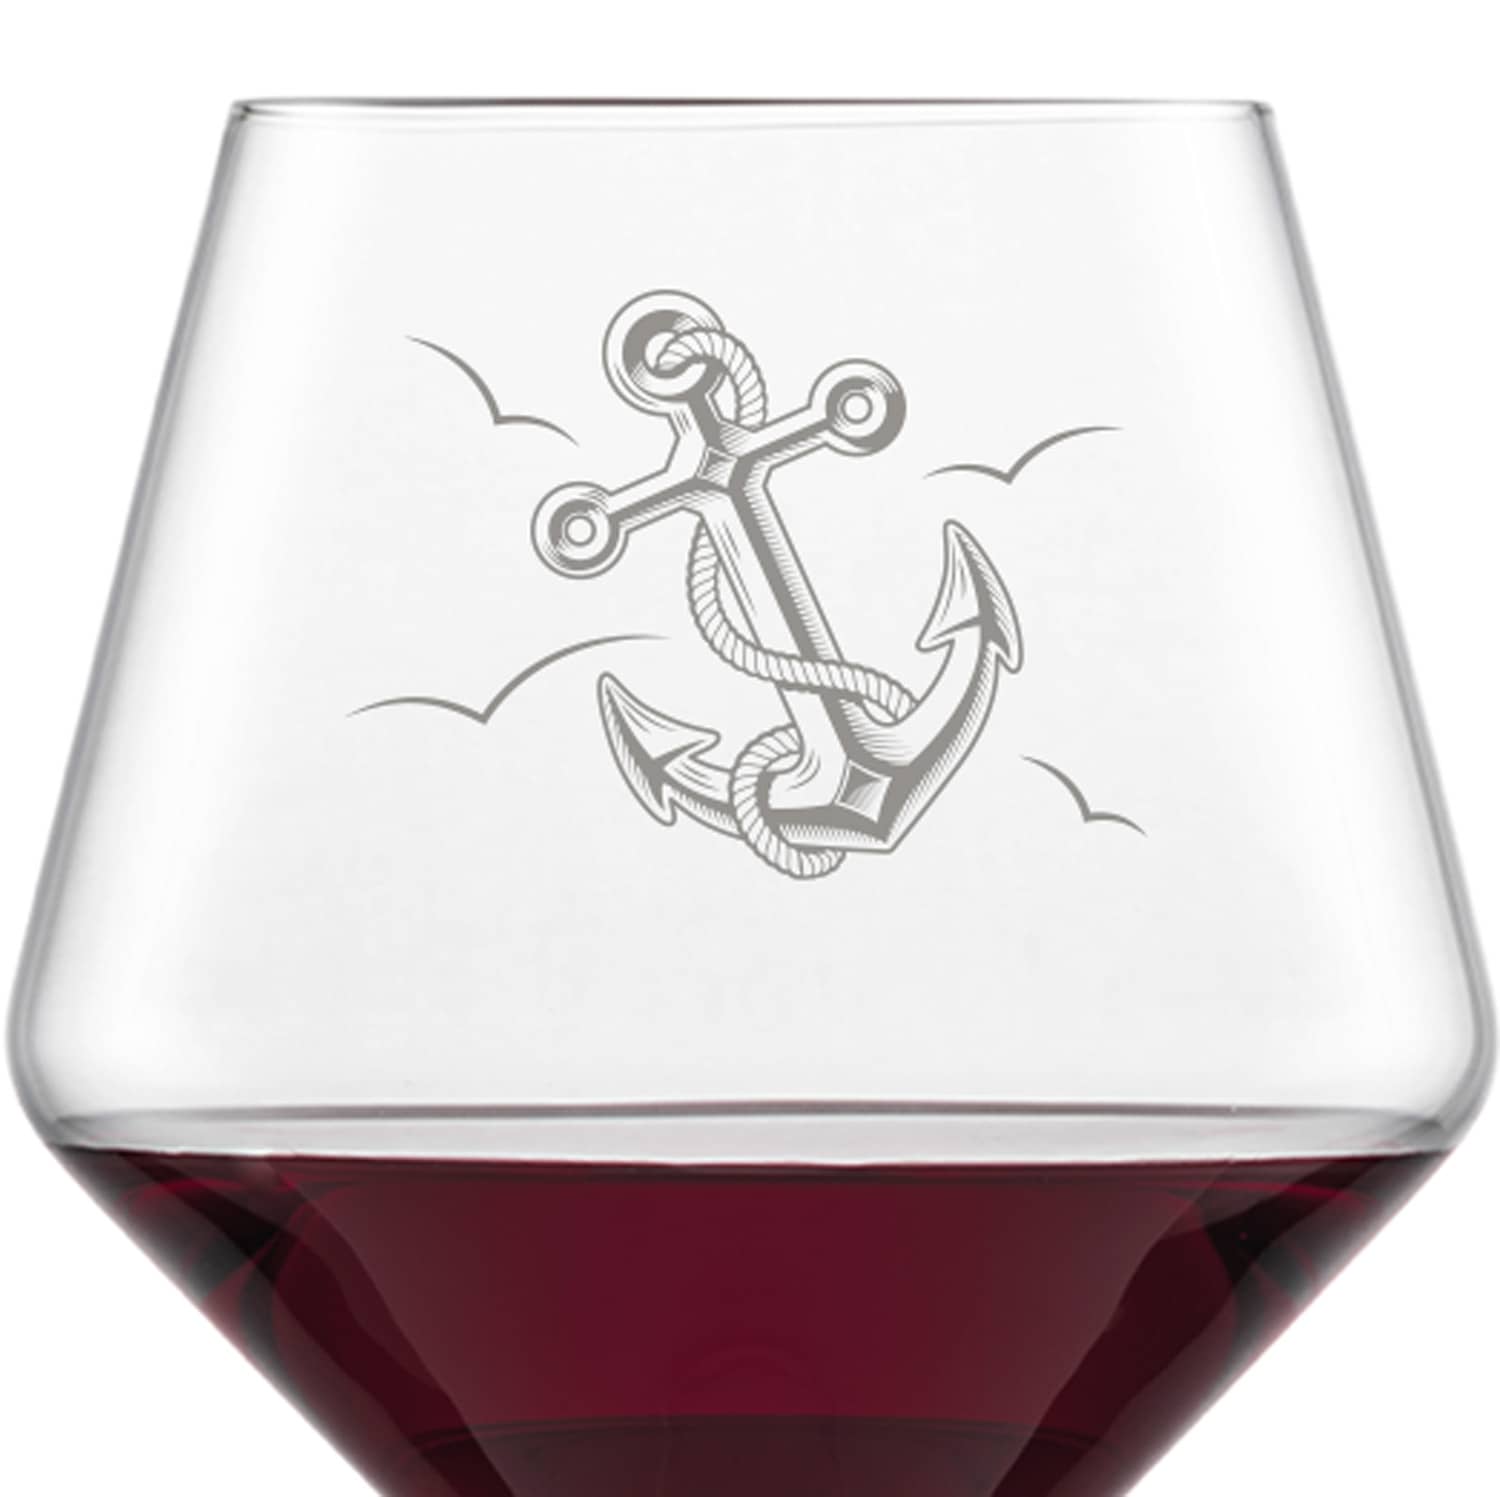 Schott Zwiesel Burgunderglas Rotweinglas PURE mit Namen oder Wunschtext graviert (Anker)